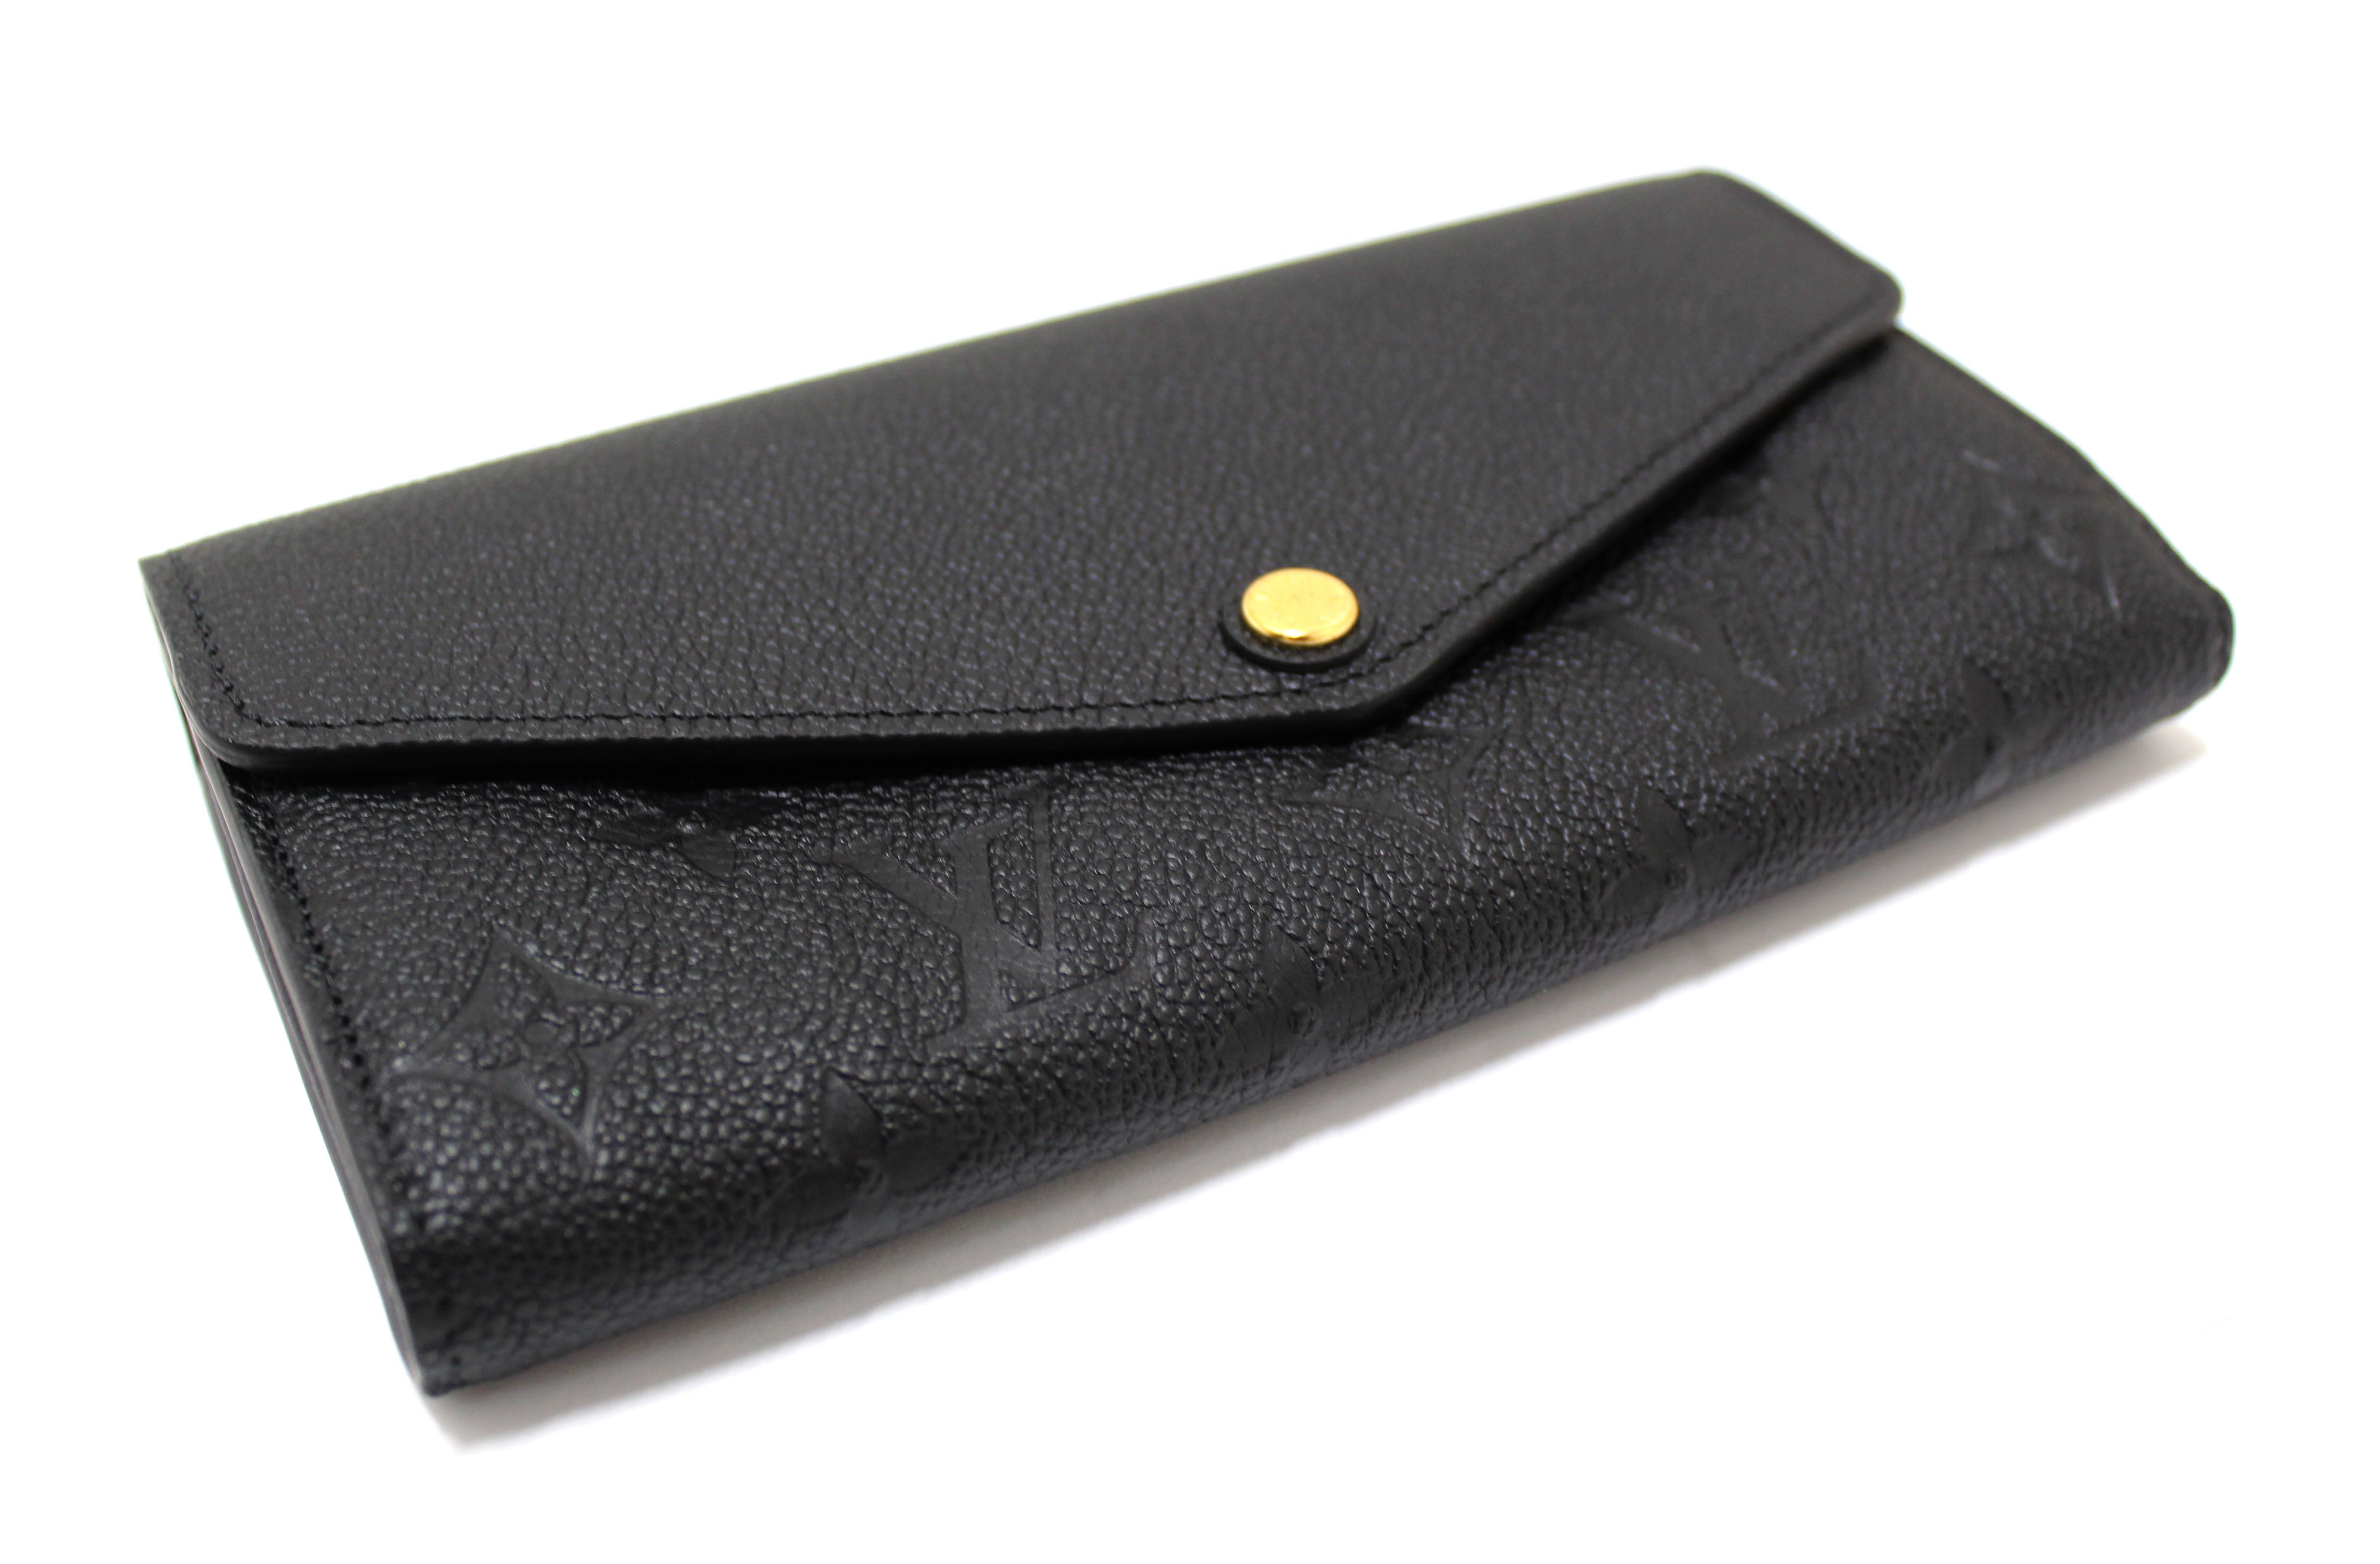 Authentic Louis Vuitton Black Monogram Empreinte Leather Sarah Wallet